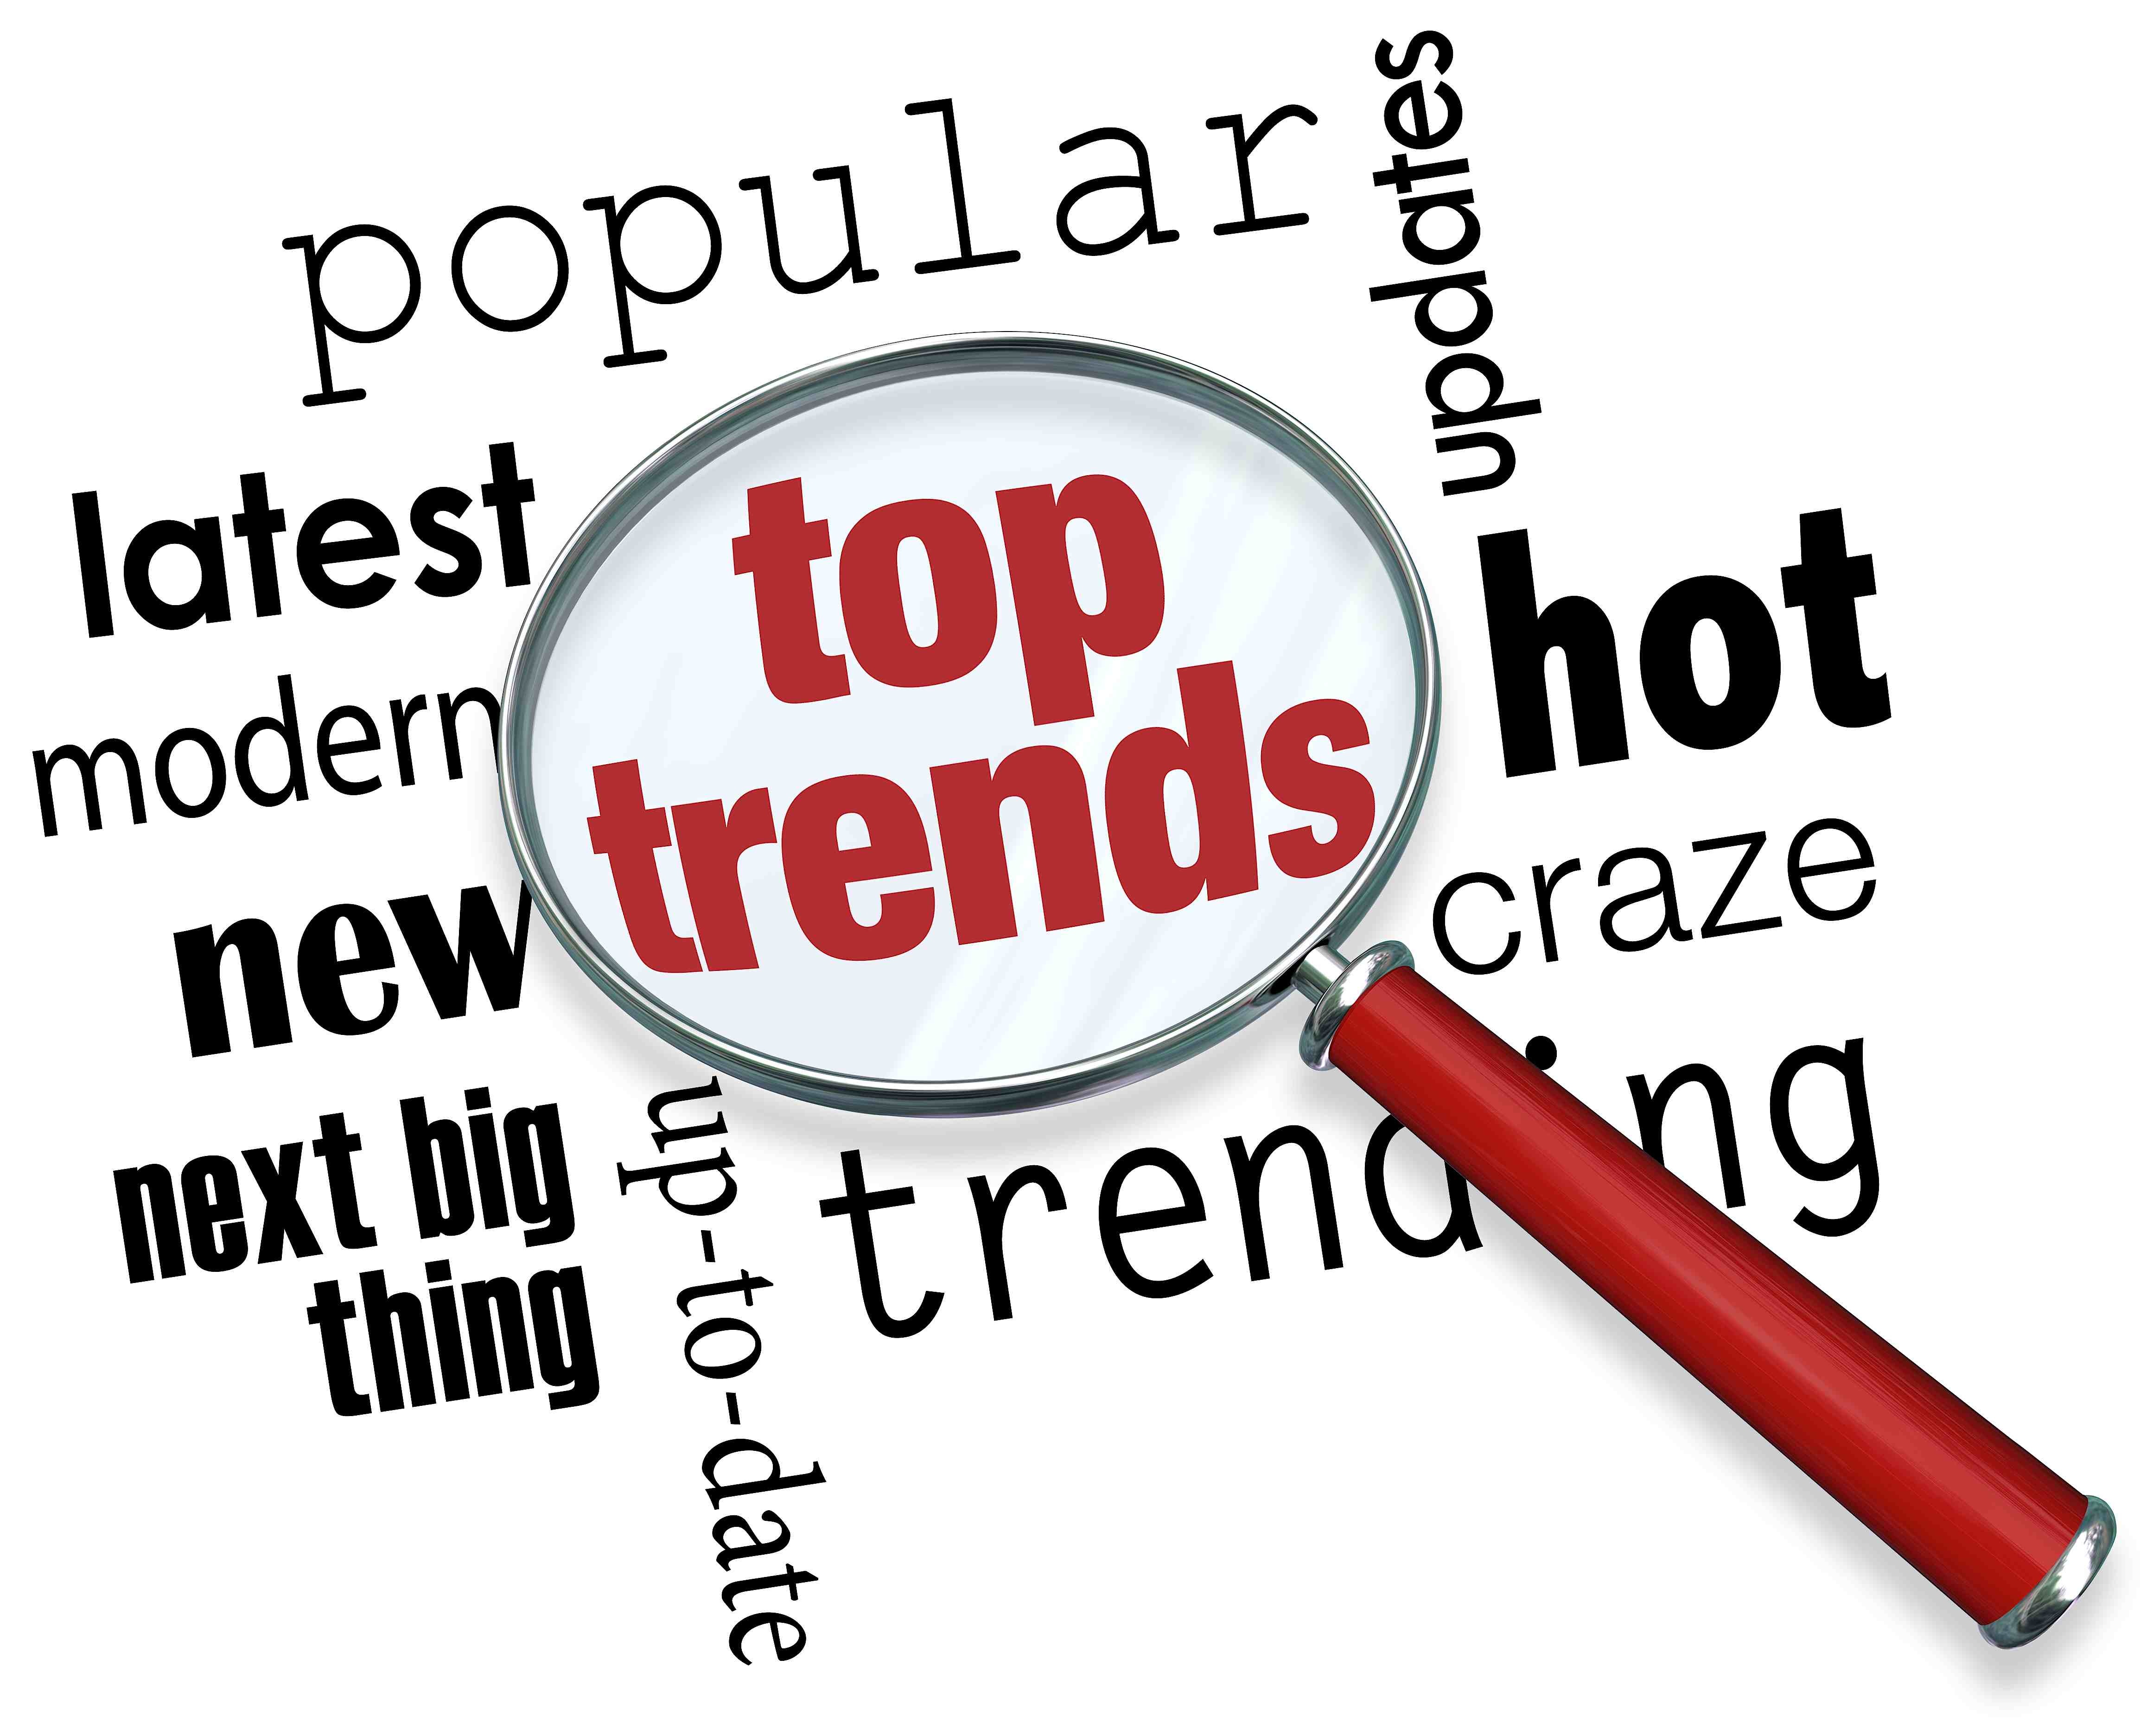 trending news topics 2016